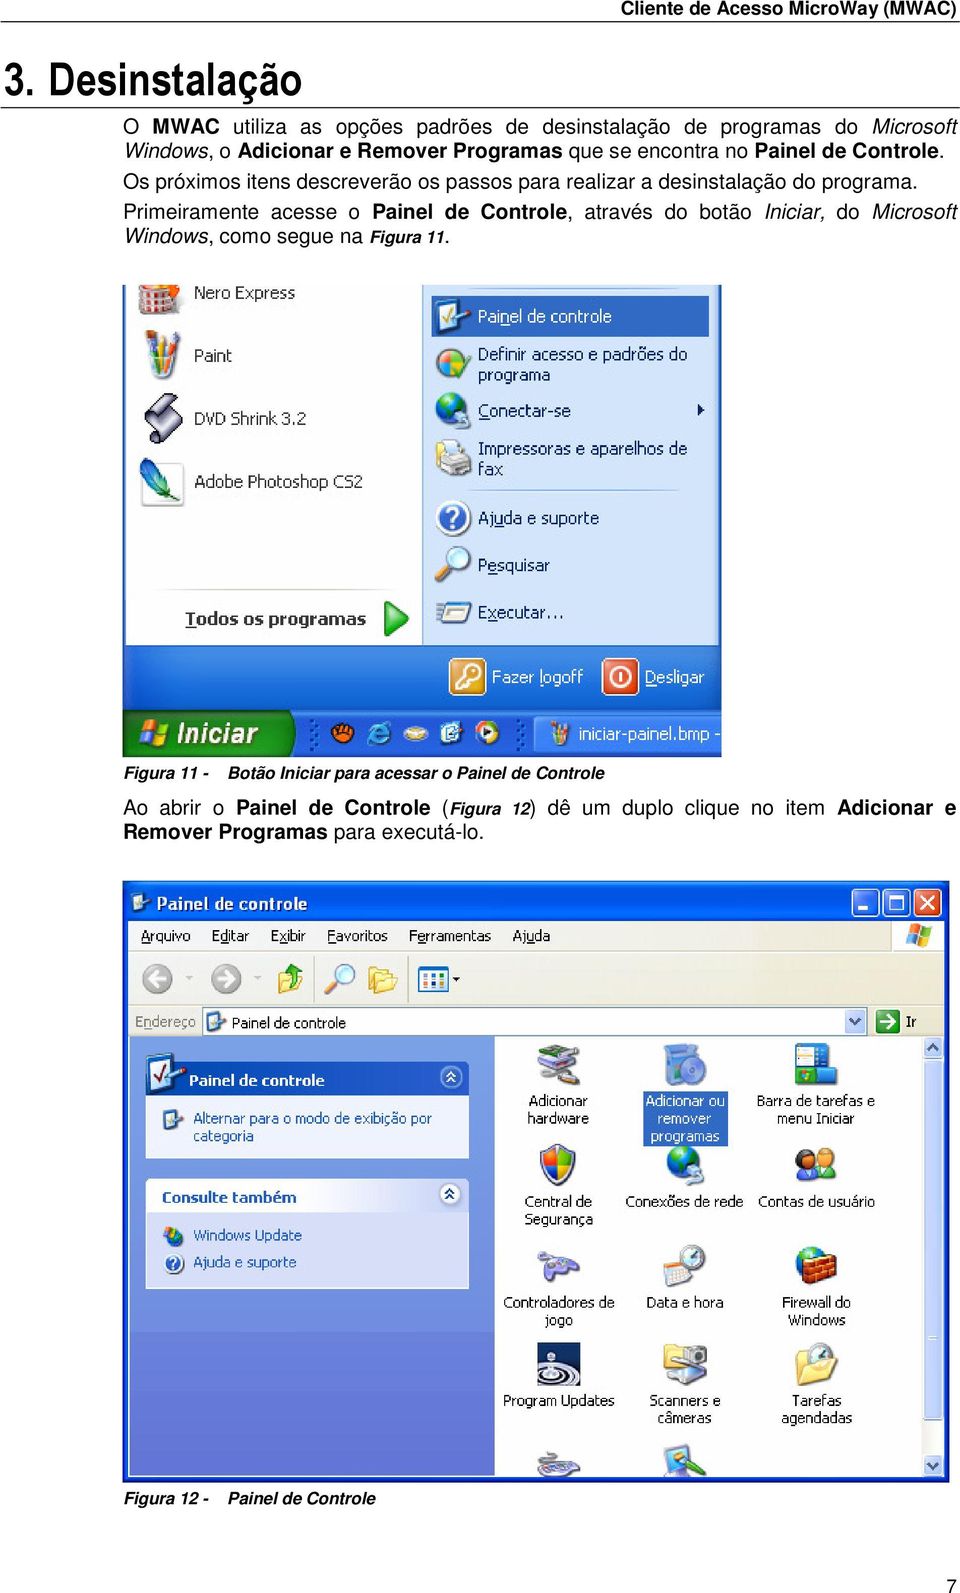 Primeiramente acesse o Painel de Controle, através do botão Iniciar, do Microsoft Windows, como segue na Figura 11.